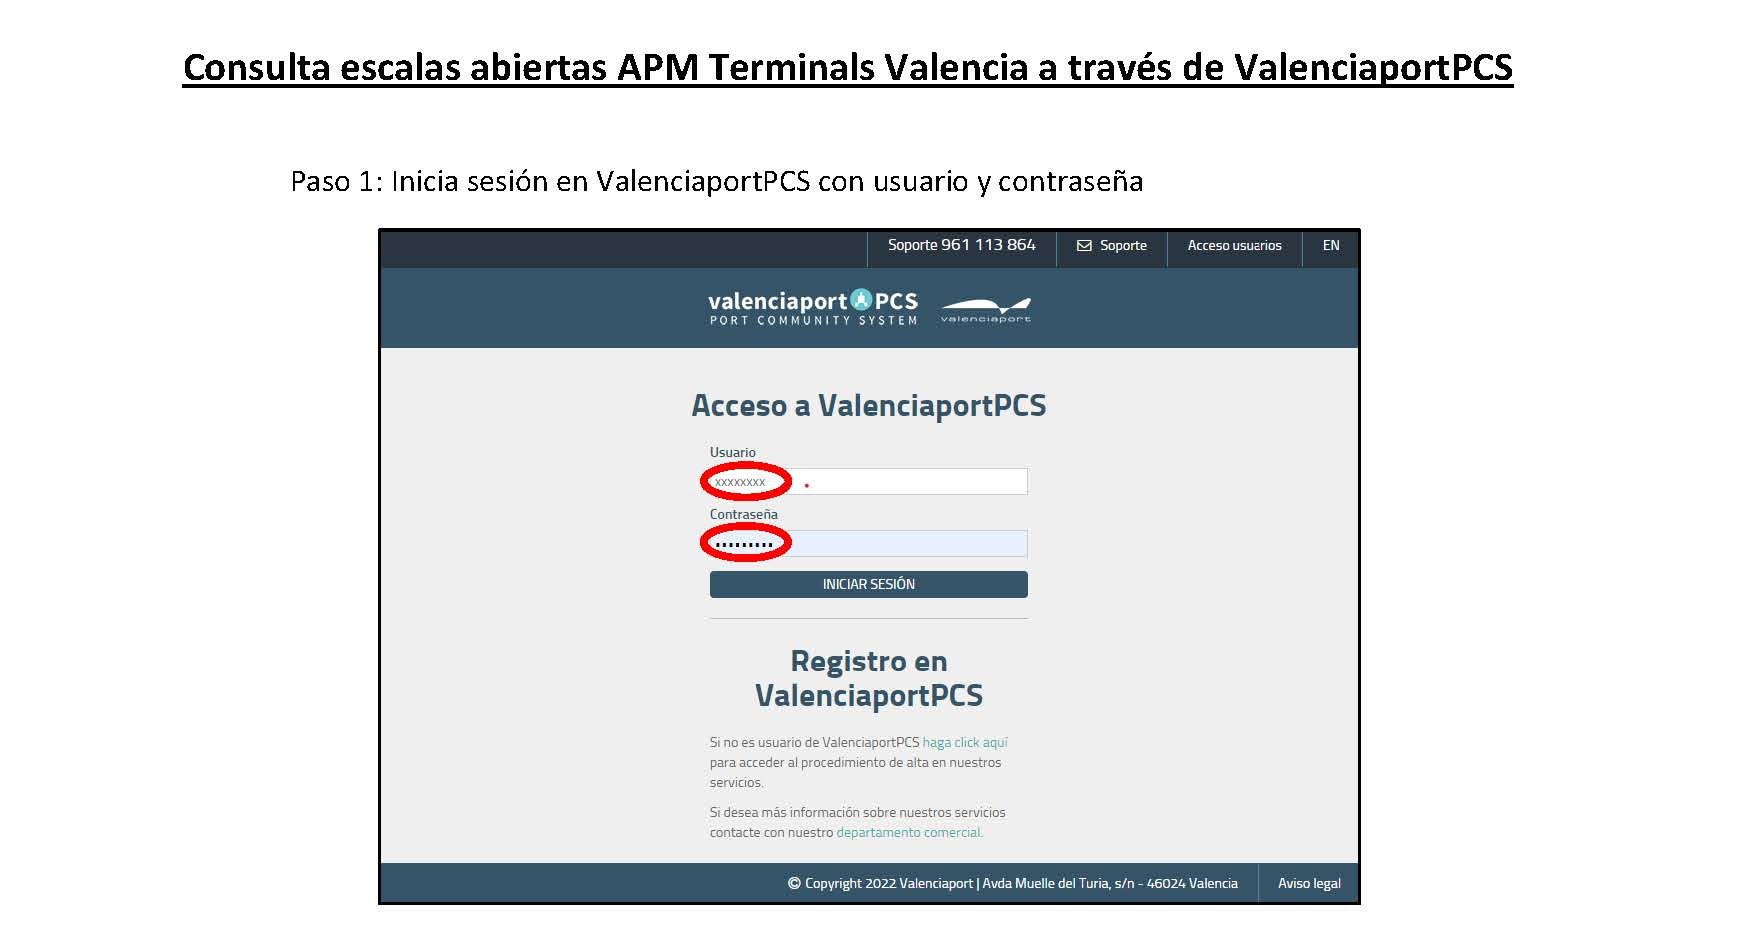 Información escalas abiertas en APM Terminals Valencia